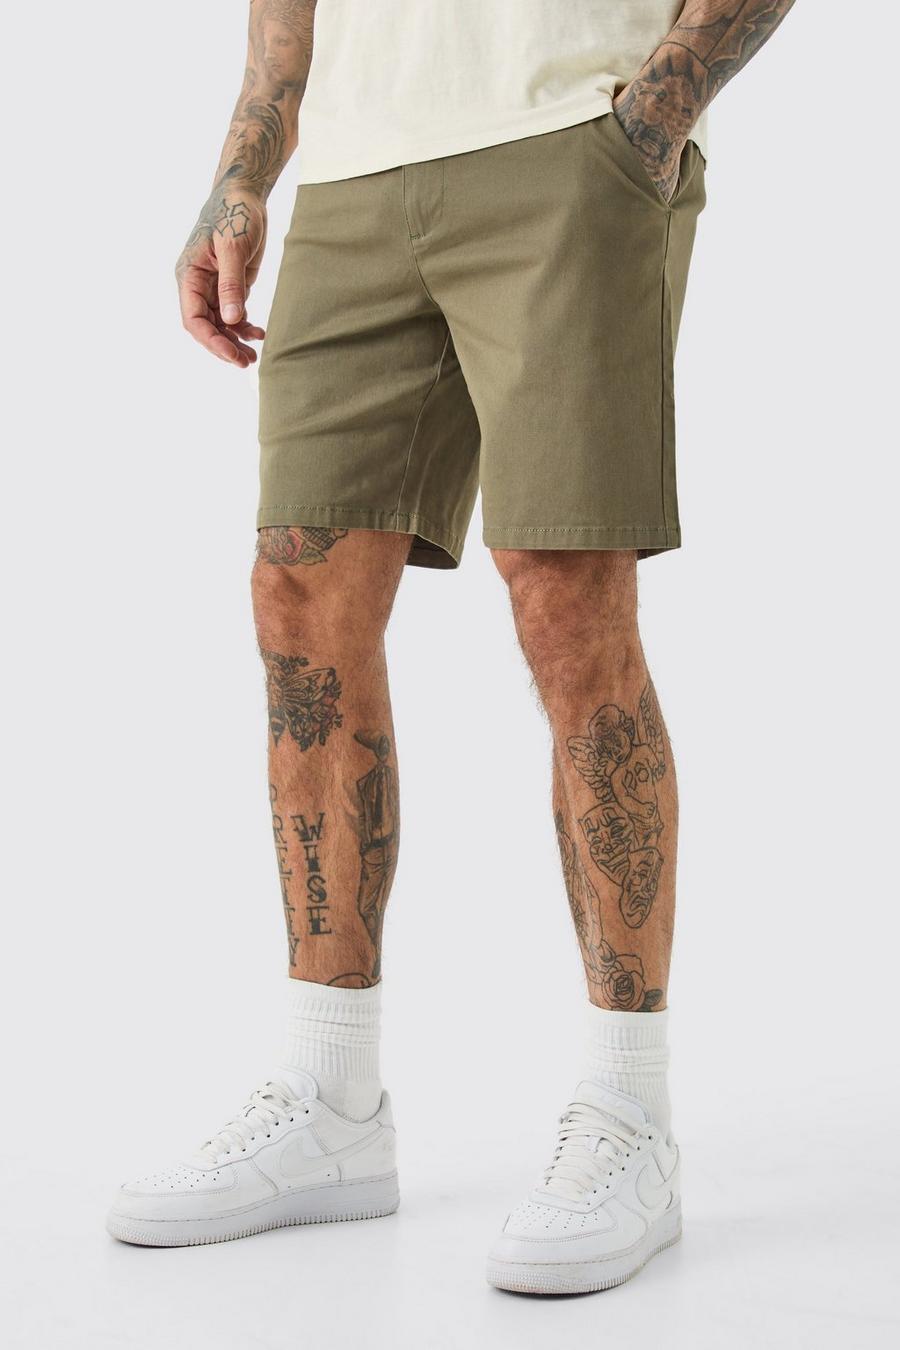 Pantalones cortos Tall chinos ajustados con cintura fija en color caqui, Khaki image number 1